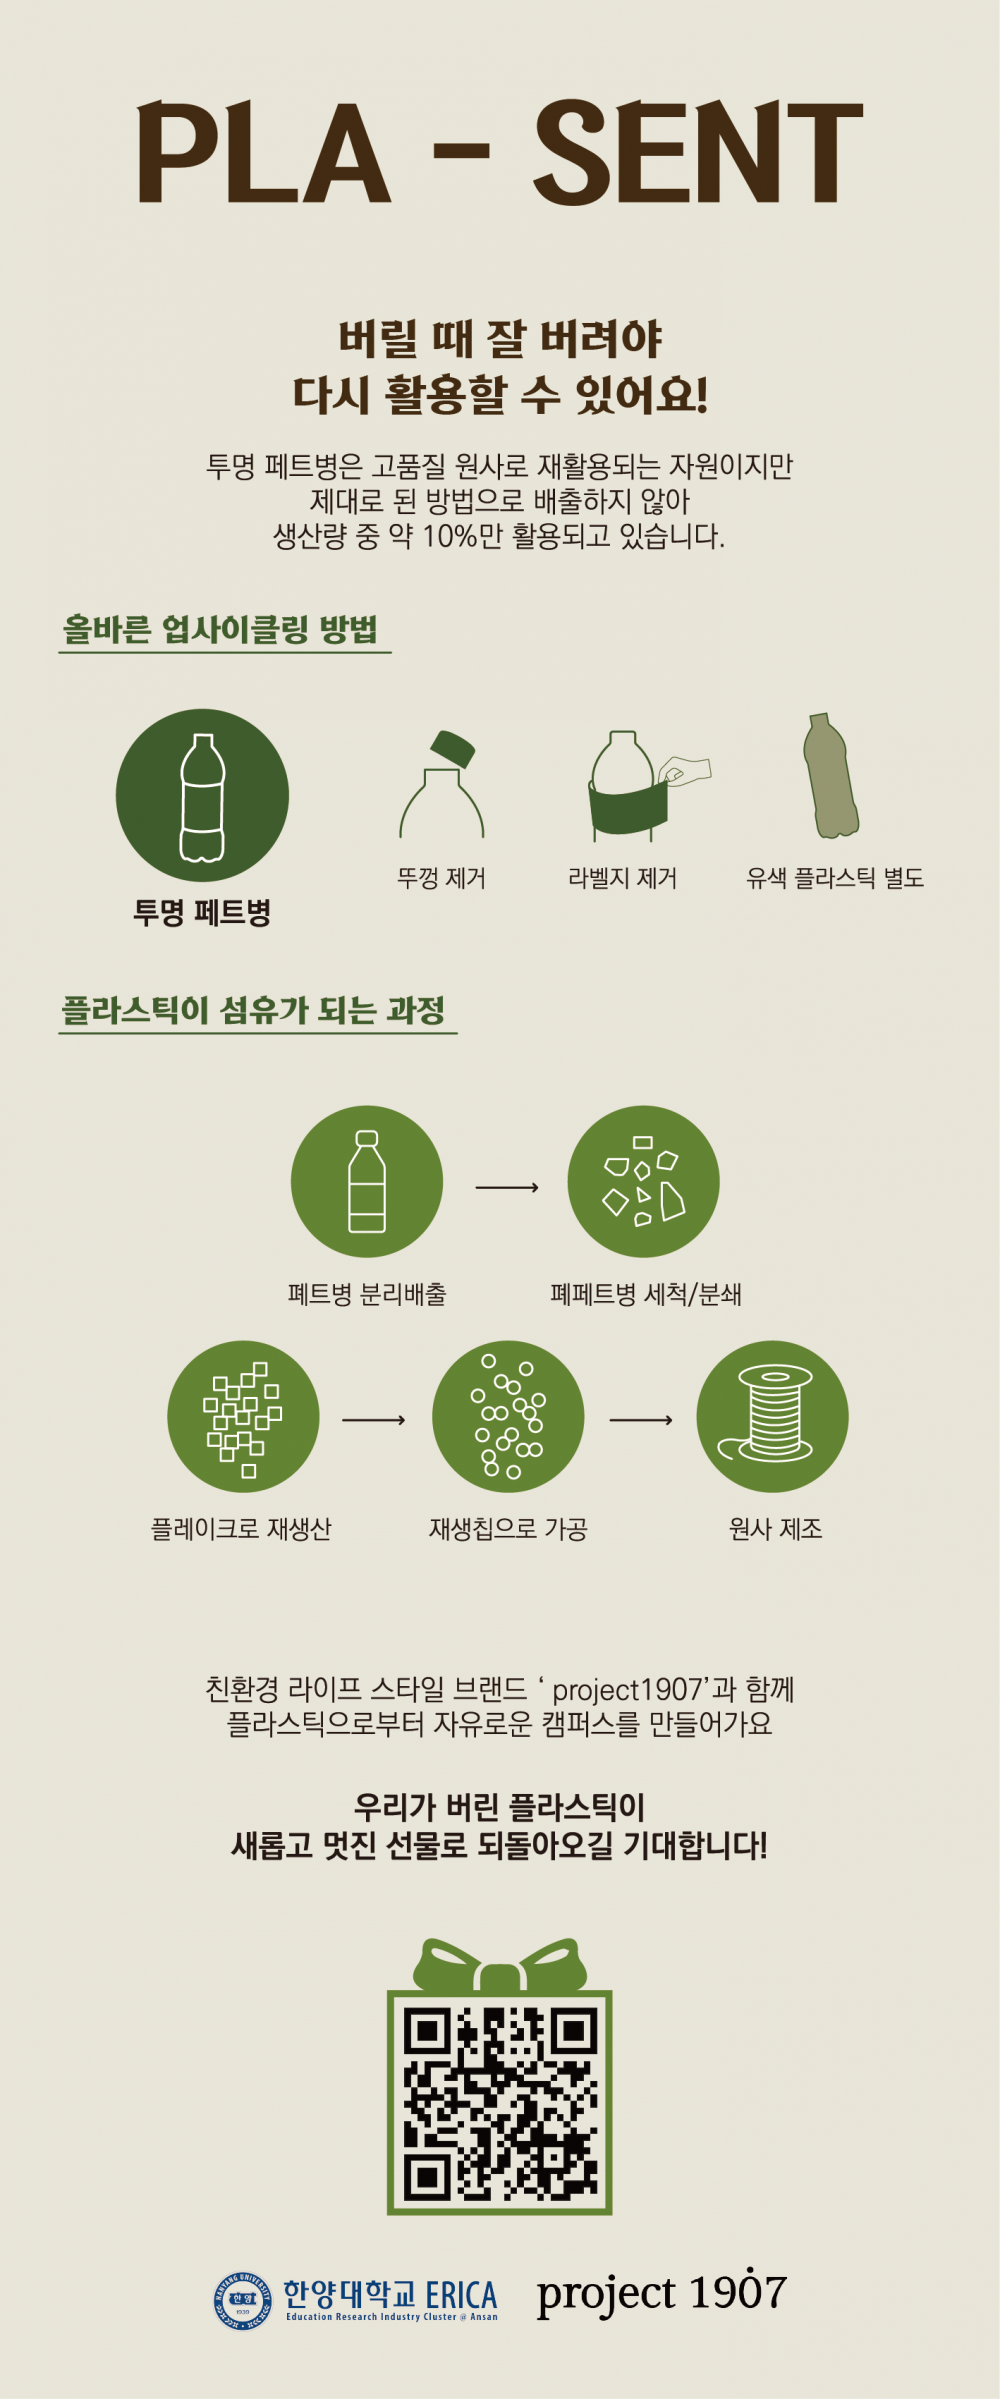 2. 업사이클링 수거함 홍보문